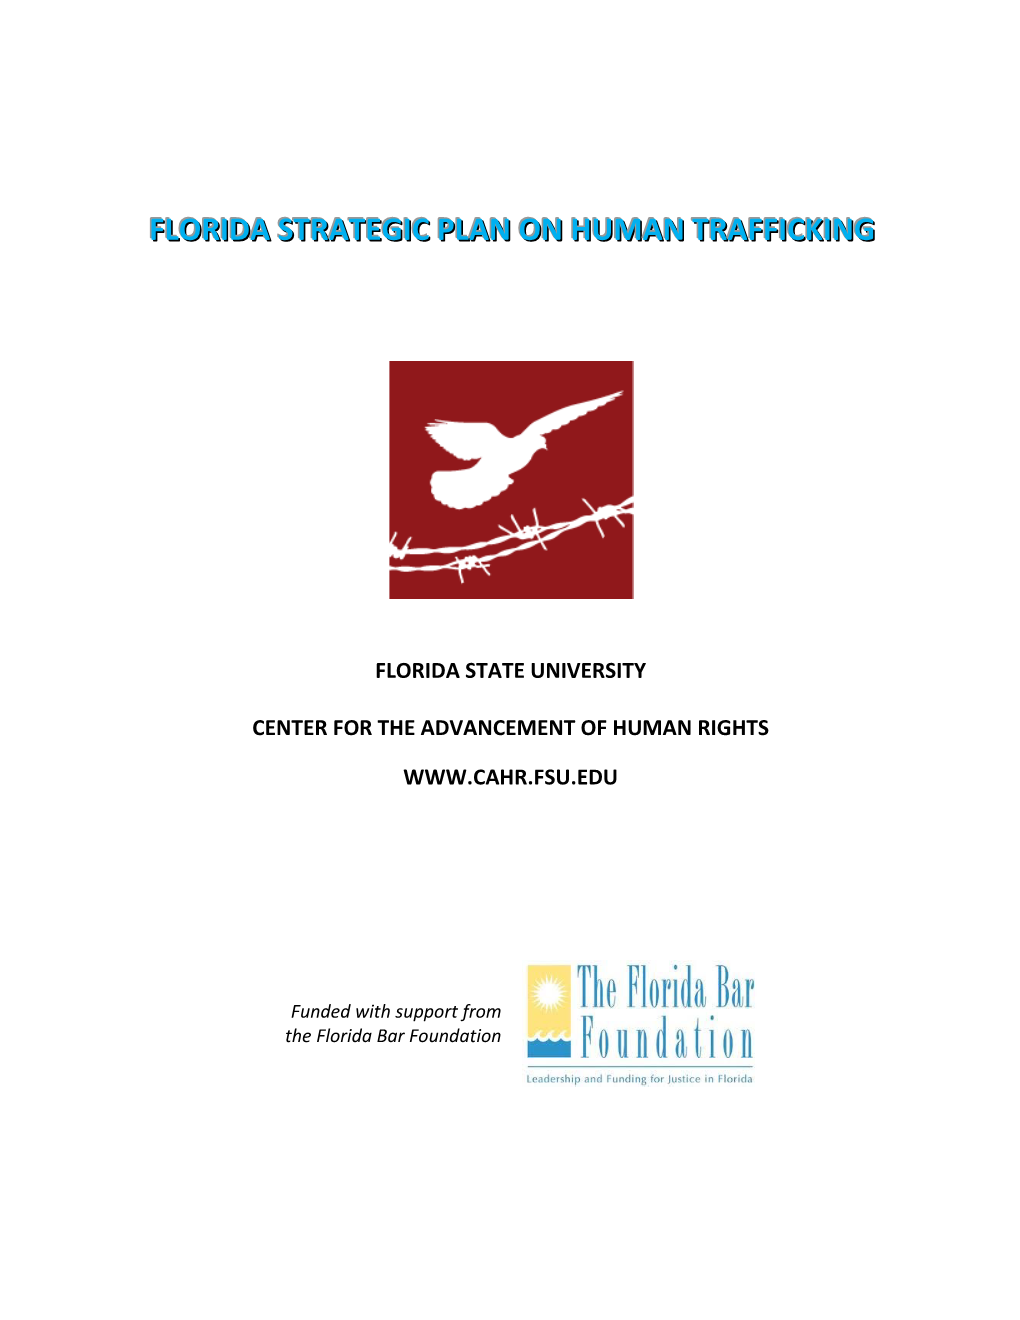 Florida Strategic Plan on Human Trafficking